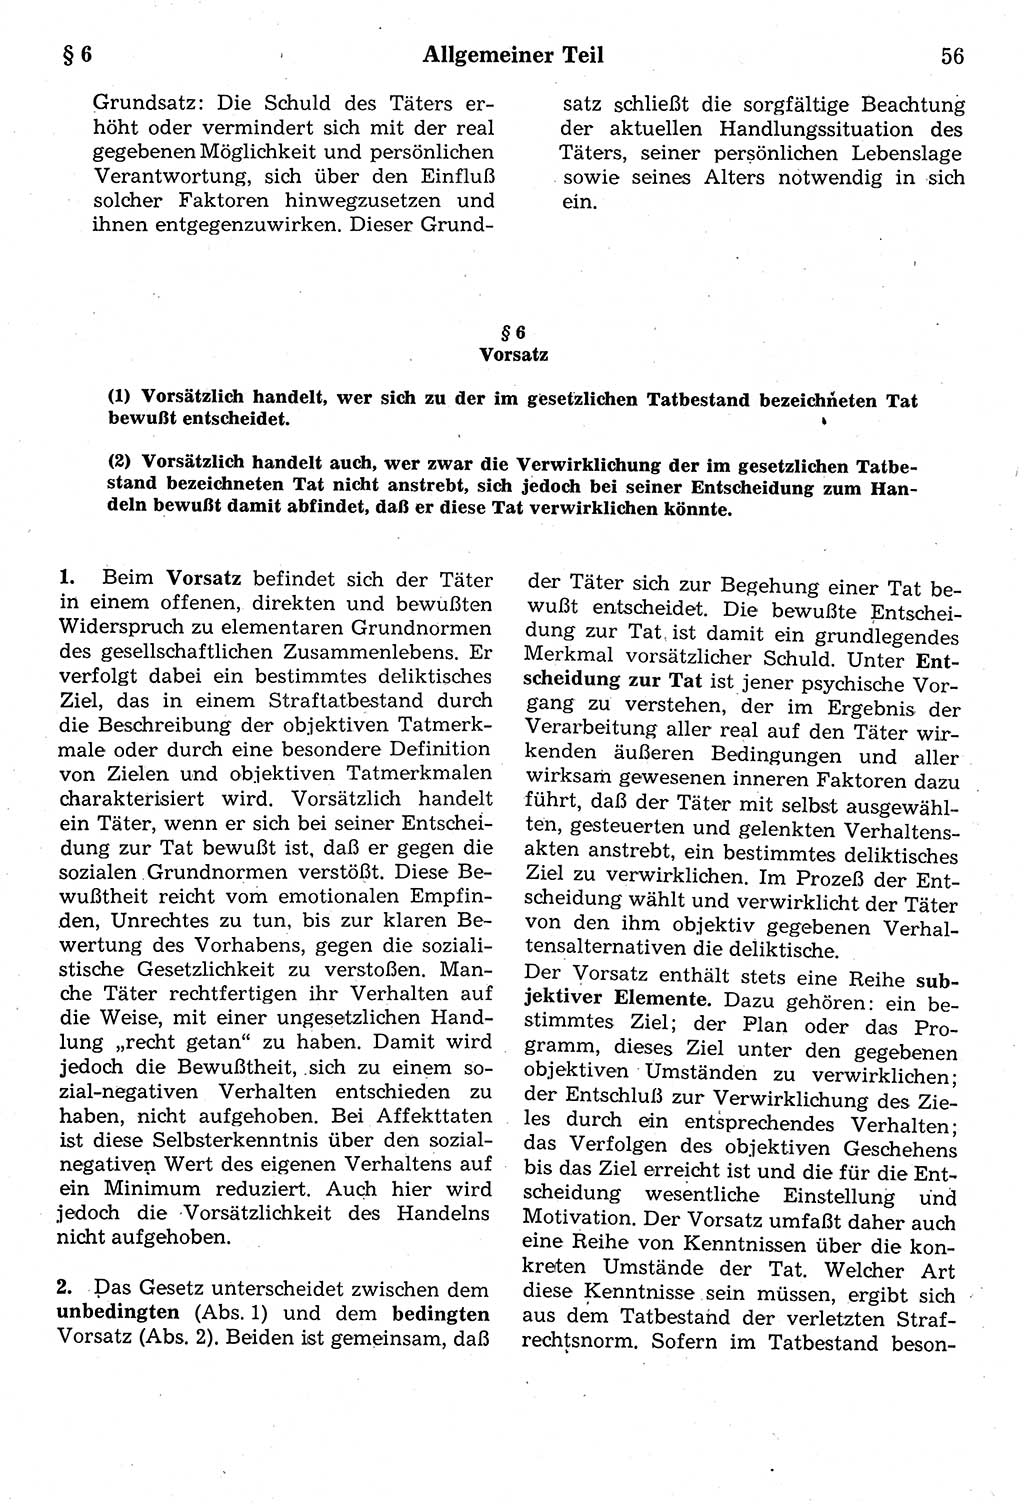 Strafrecht der Deutschen Demokratischen Republik (DDR), Kommentar zum Strafgesetzbuch (StGB) 1987, Seite 56 (Strafr. DDR Komm. StGB 1987, S. 56)